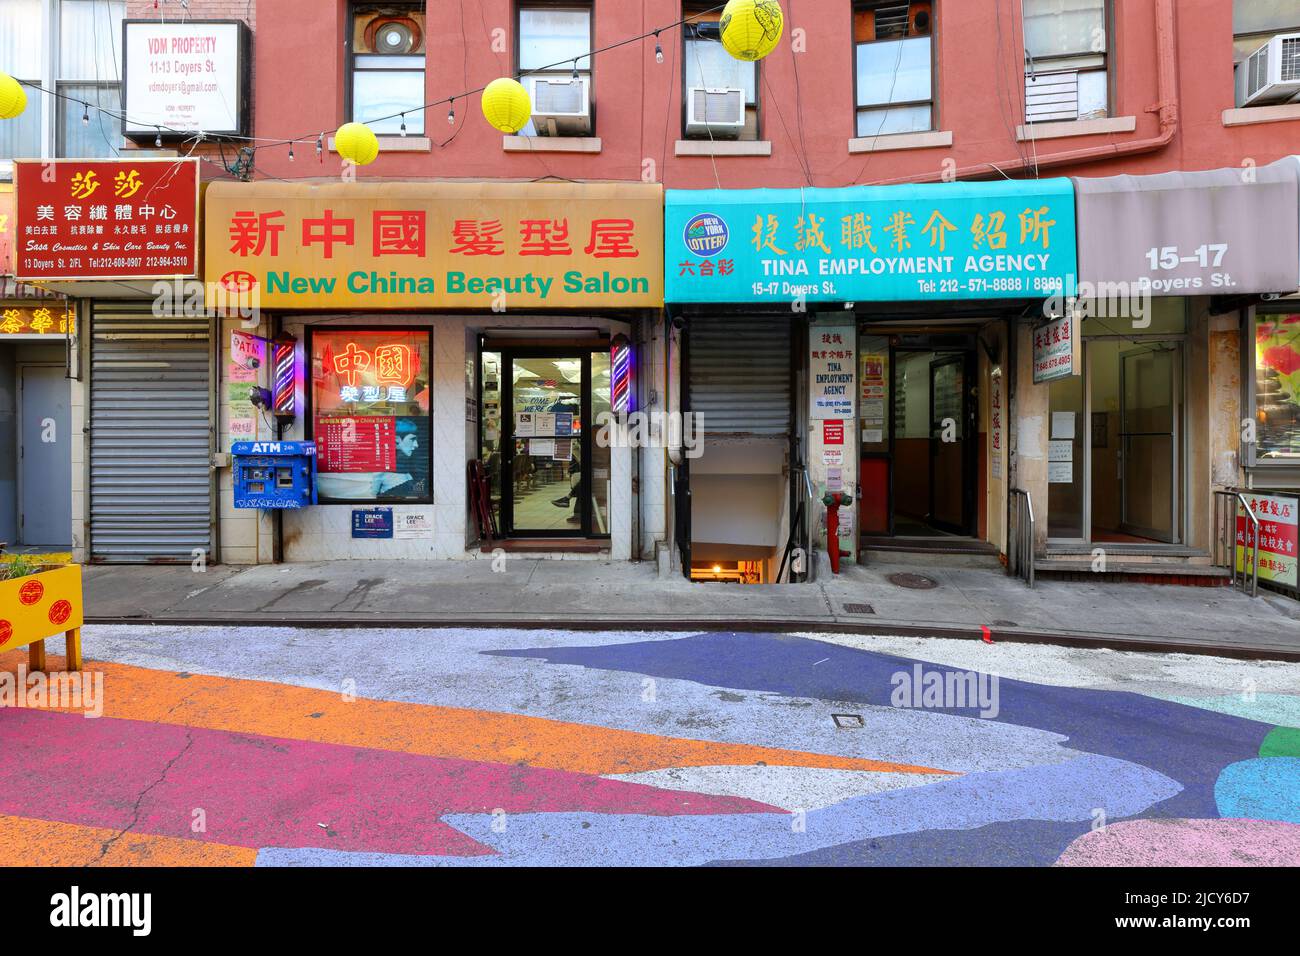 New China Beauty salon, agence de placement, 15-17 Doyers St, New York, NYC photo de la vitrine à Manhattan Chinatown. Banque D'Images